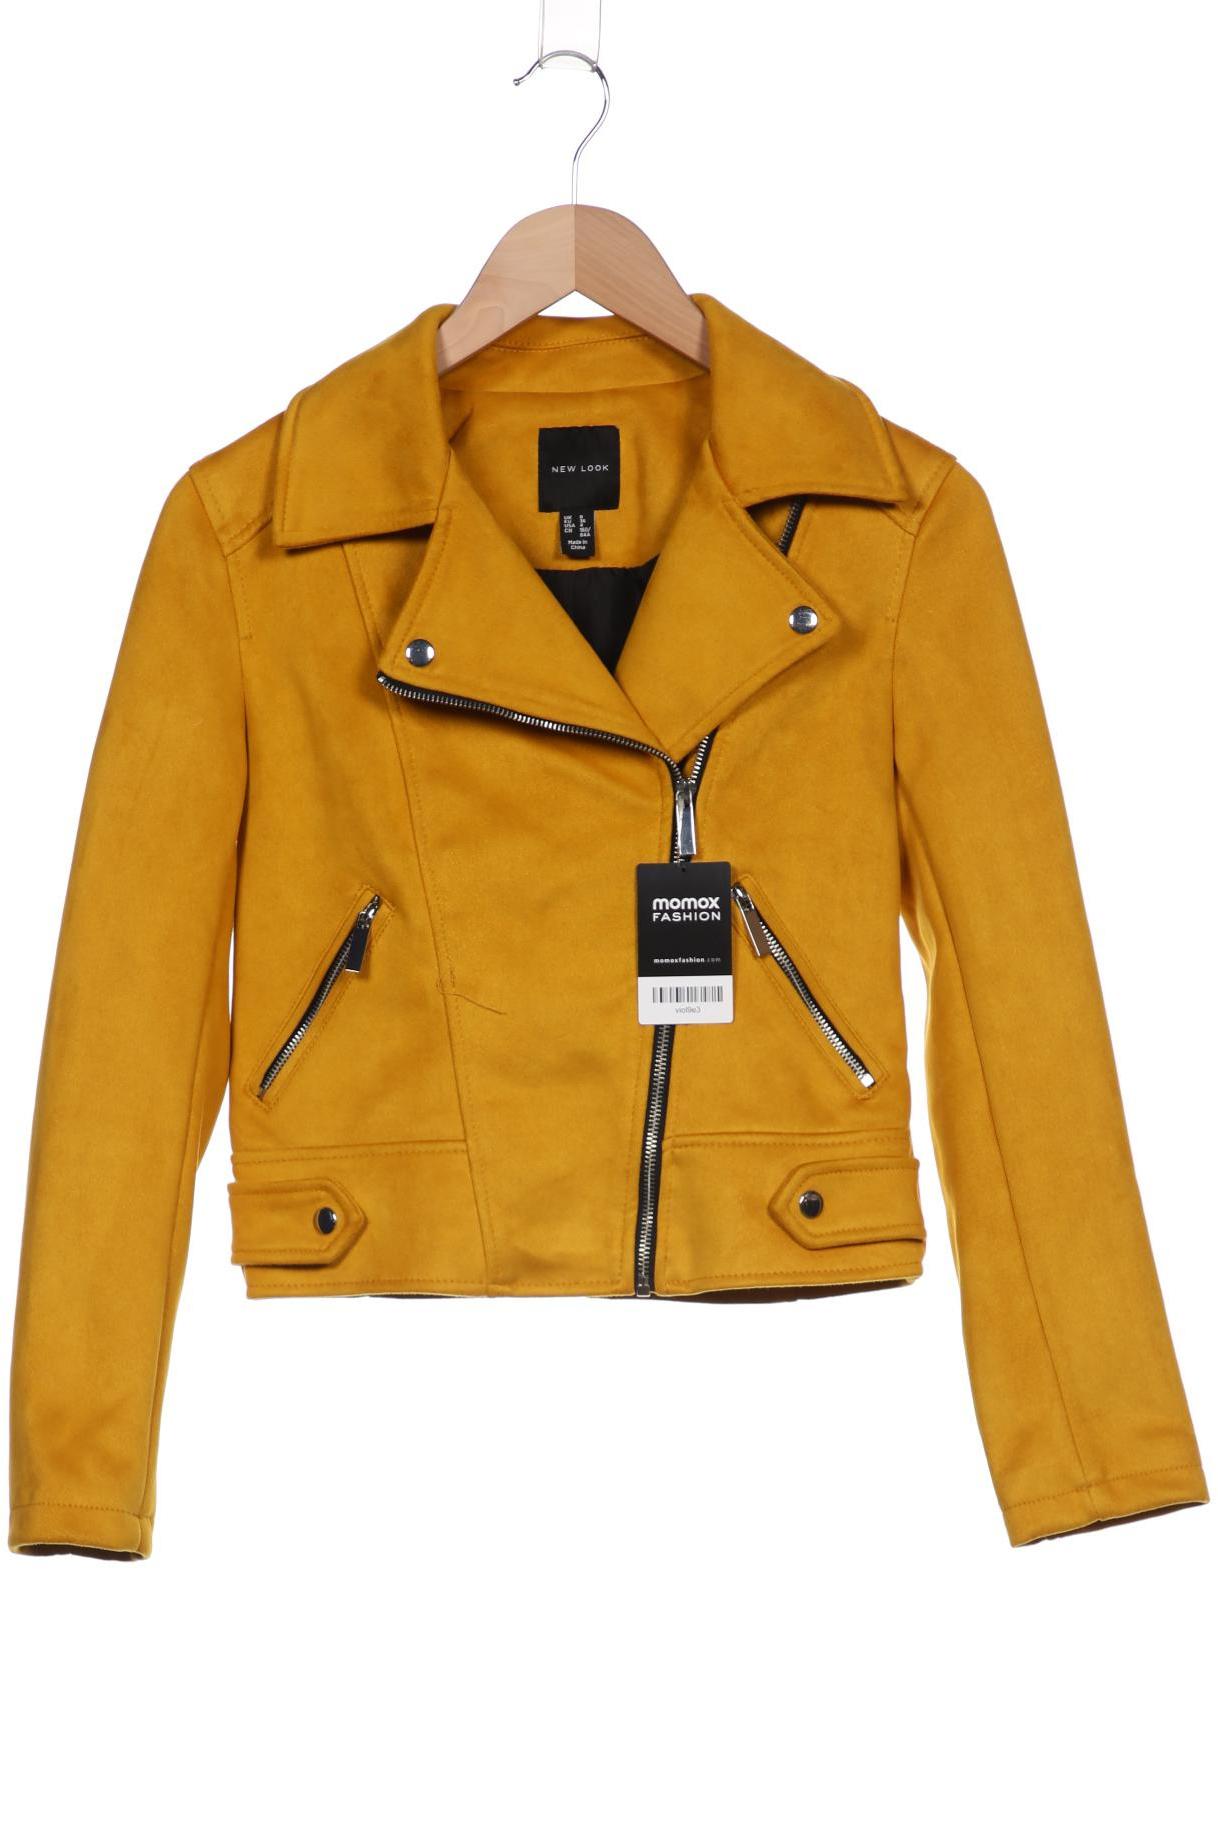 New Look Damen Jacke, gelb, Gr. 36 von New Look